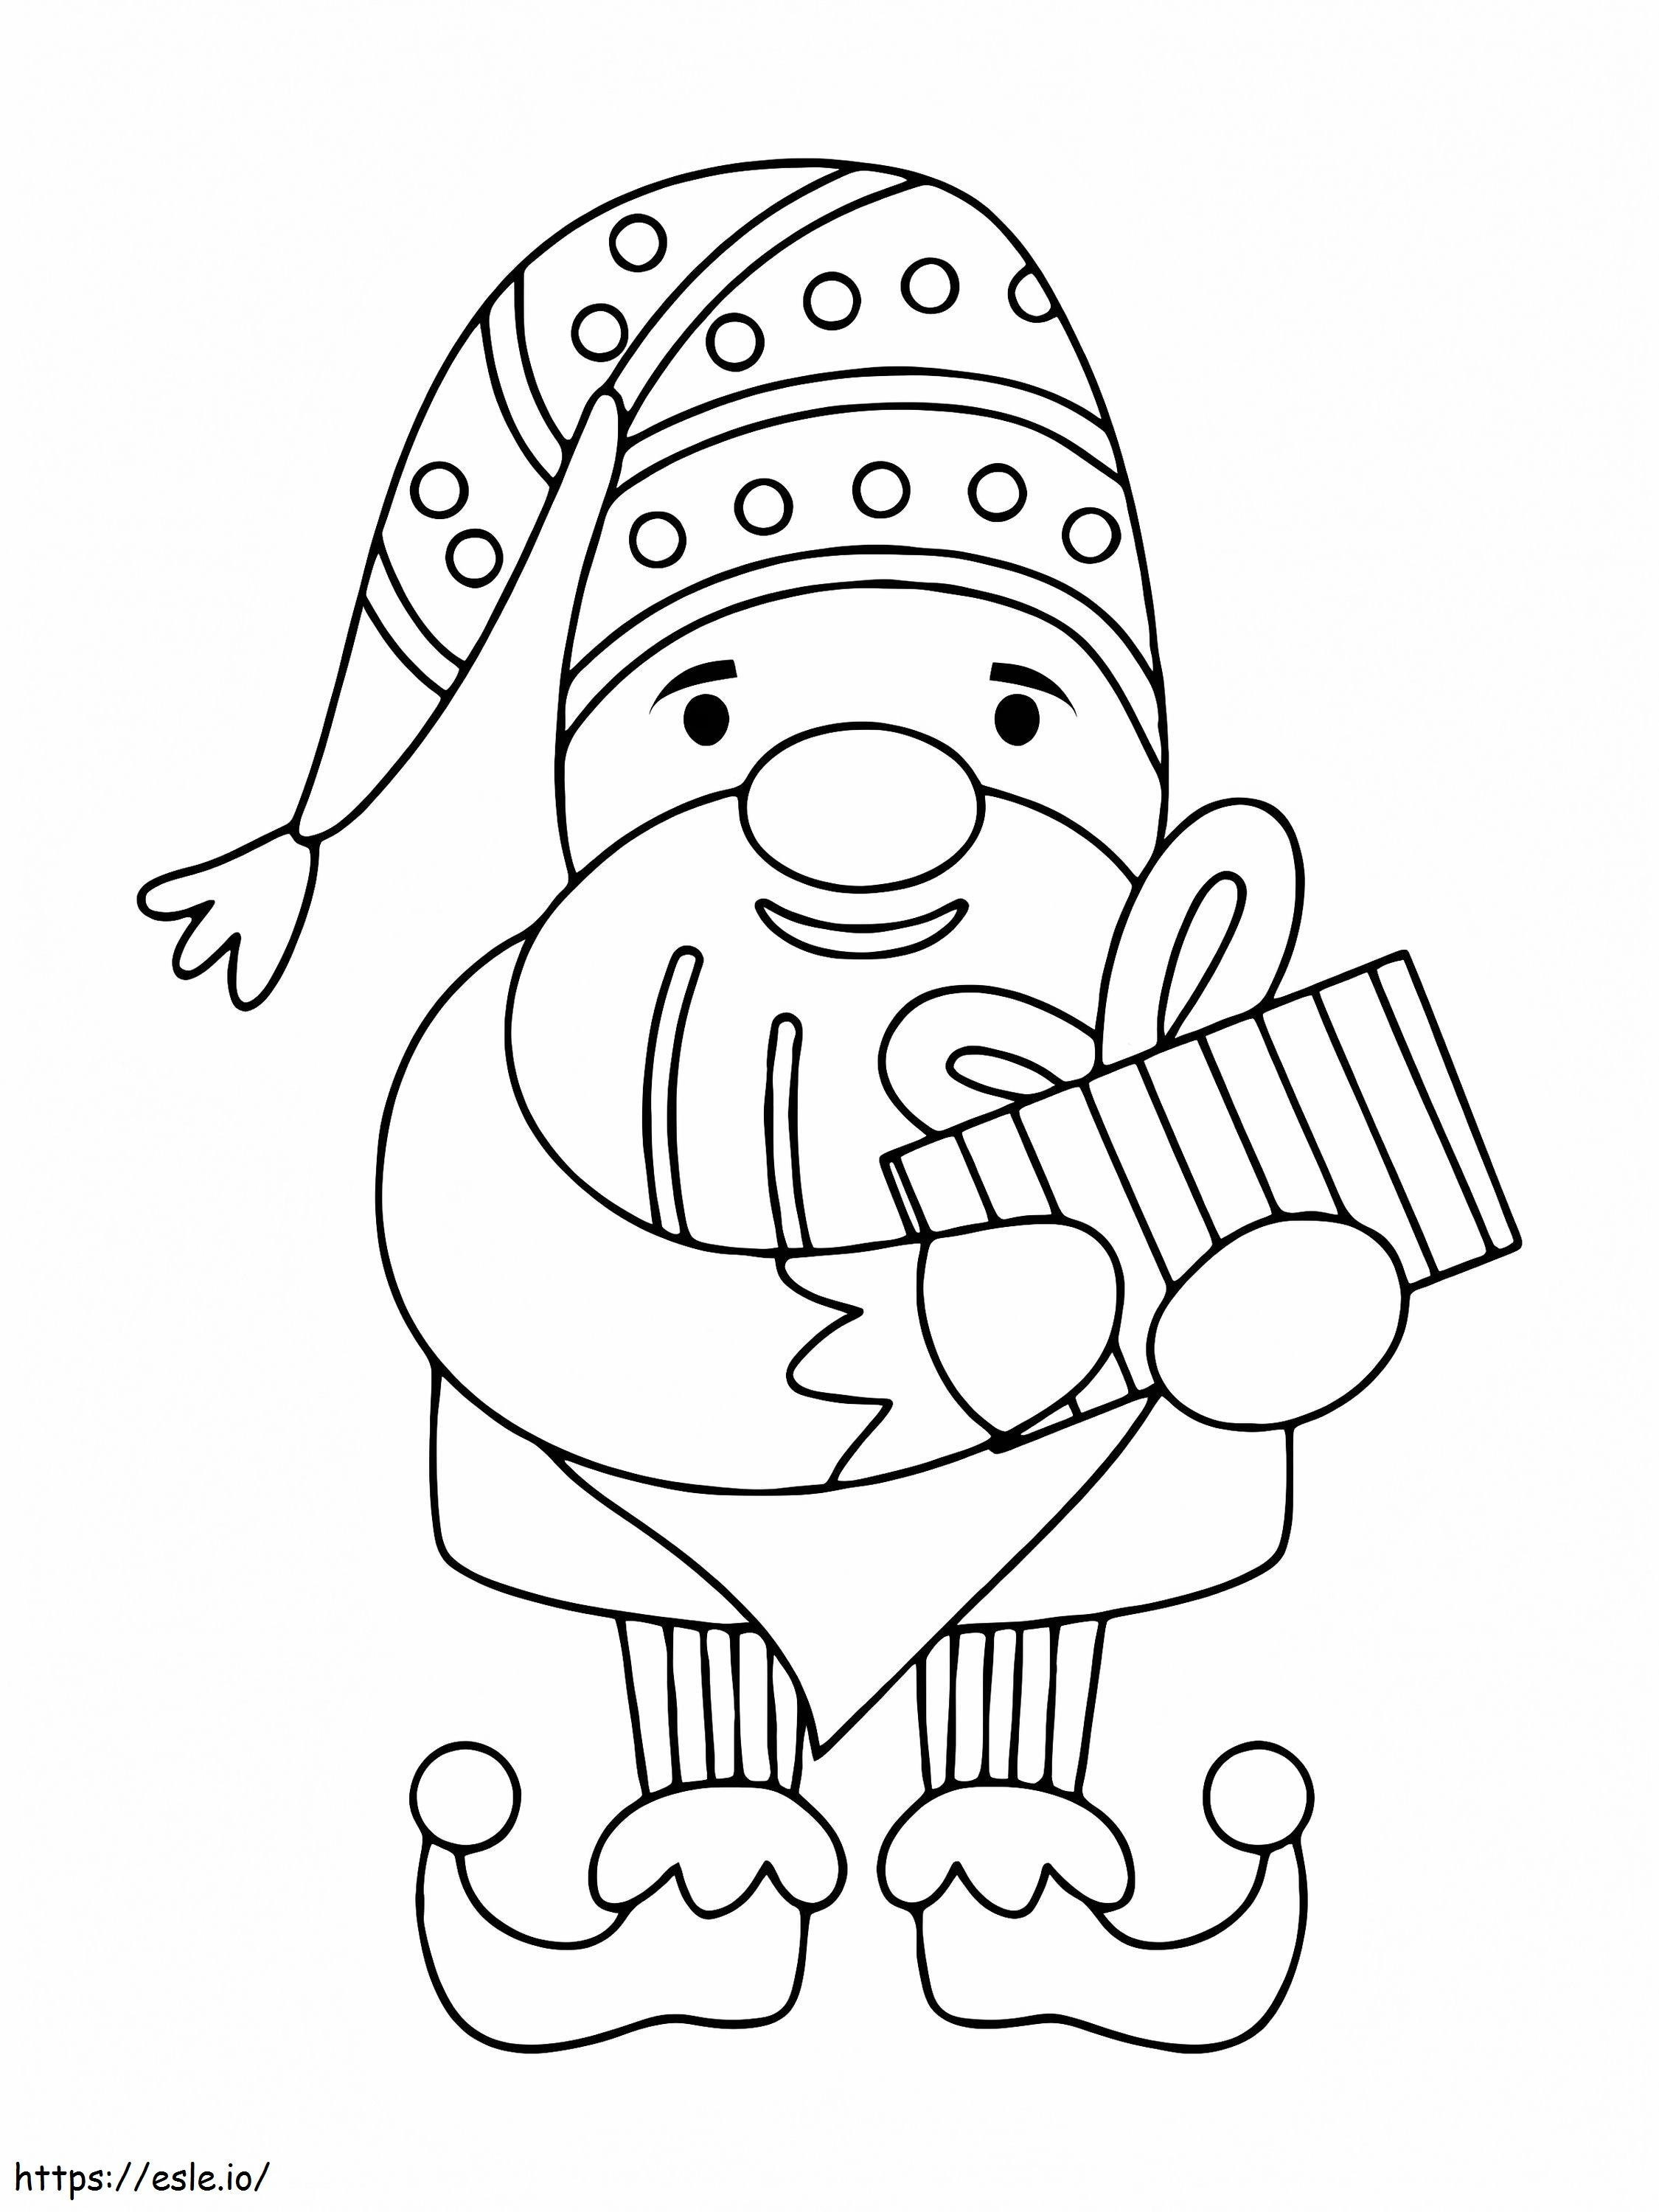 Coloriage Gnome de Noël 3 à imprimer dessin